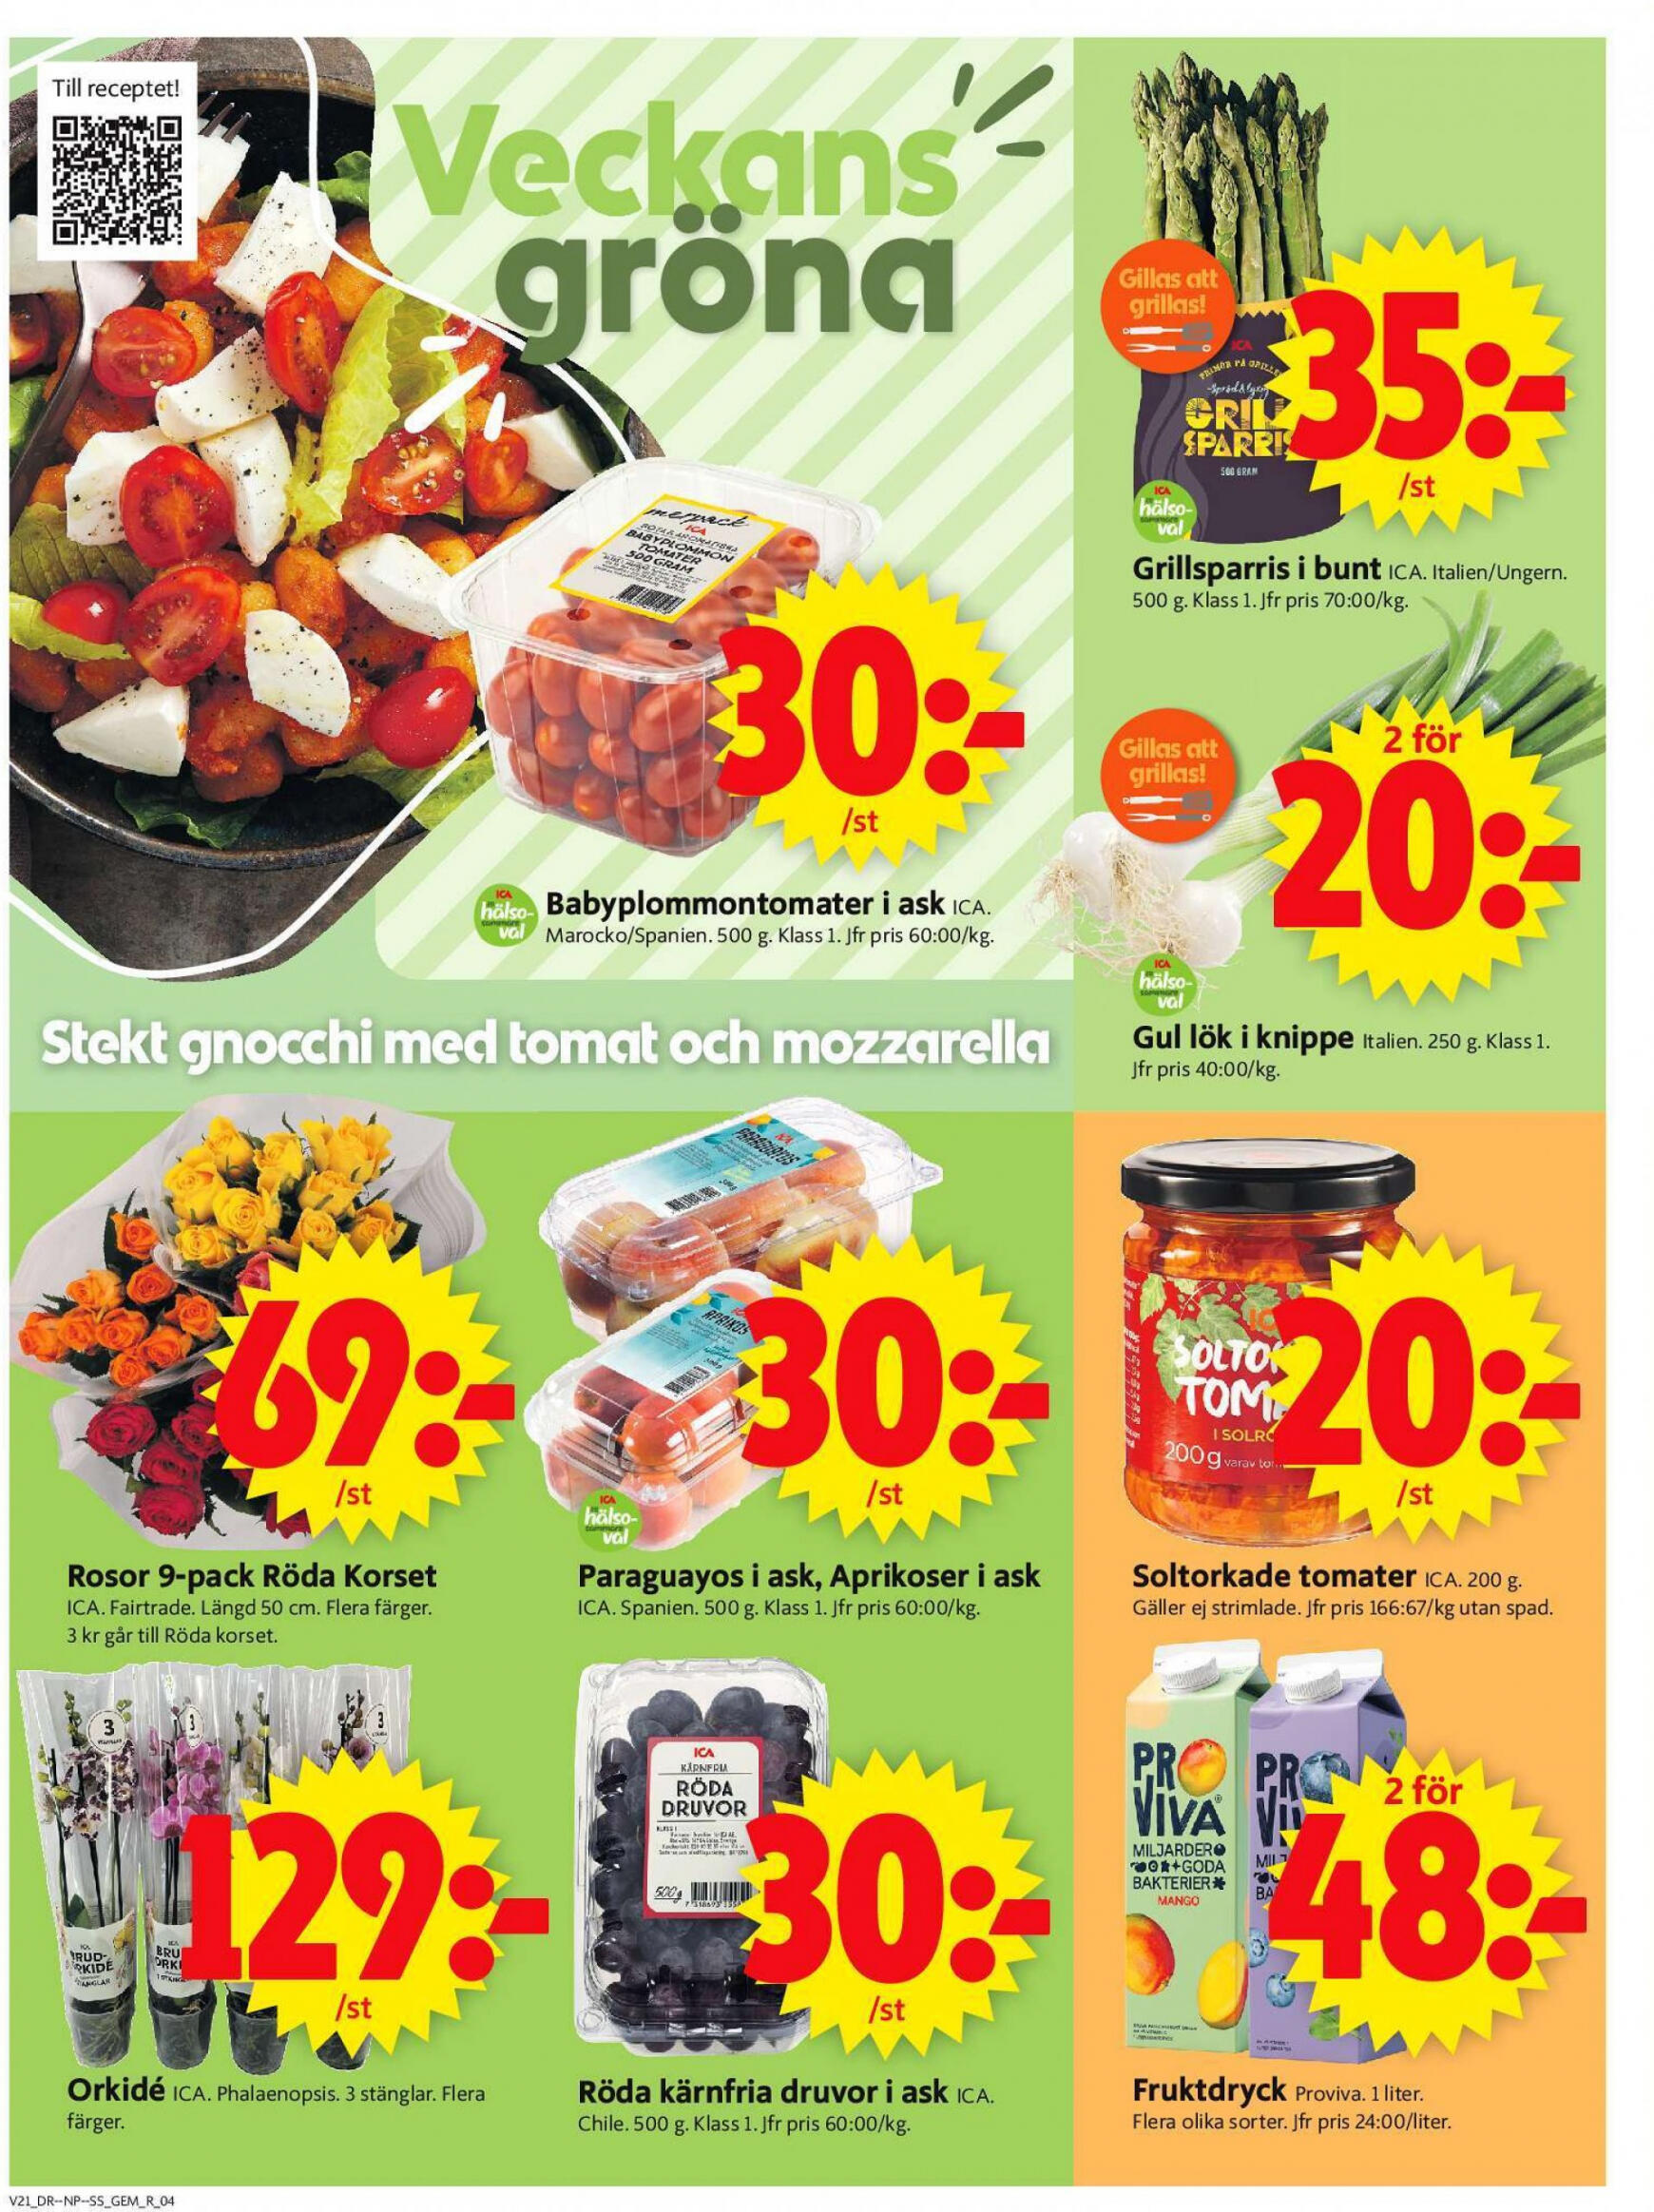 ica-supermarket - Flyer ICA Supermarket current 20.05. - 26.05. - page: 4